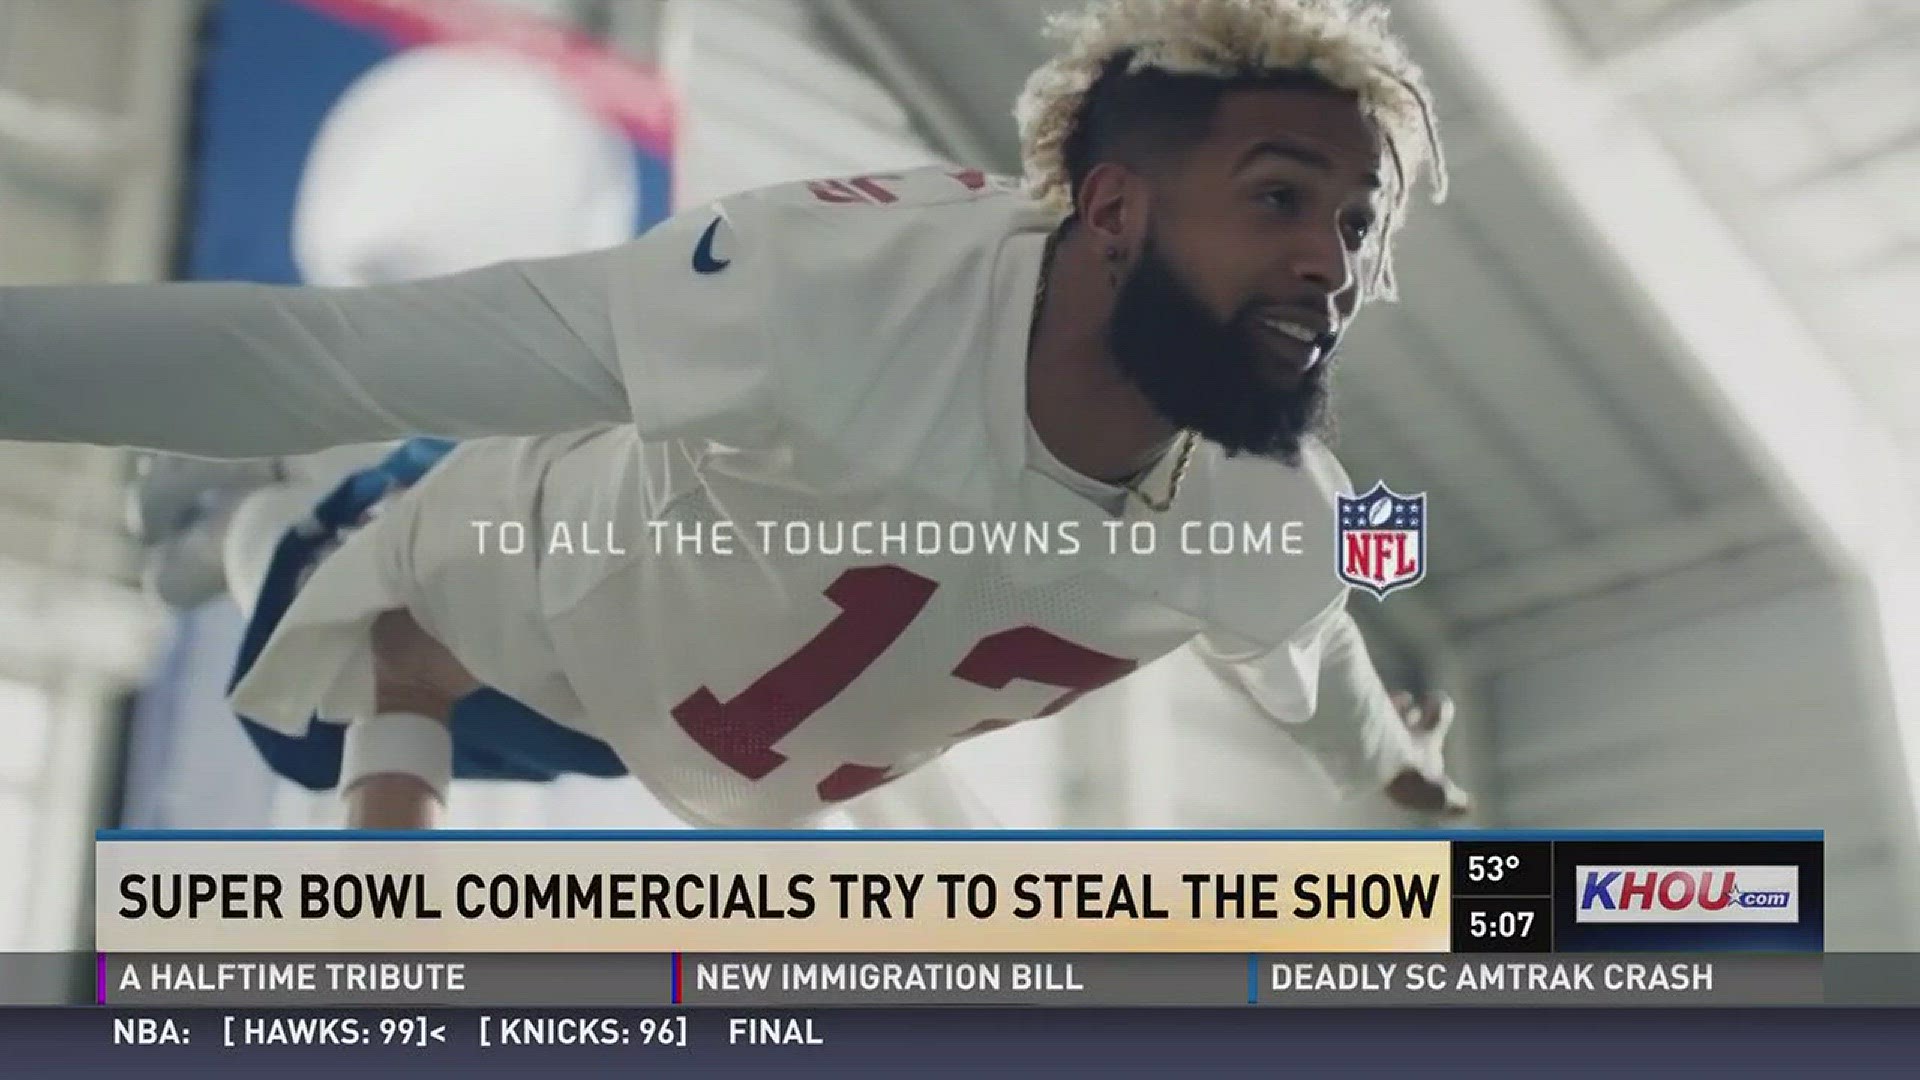 A rundown of the 2018 Super Bowl commercials